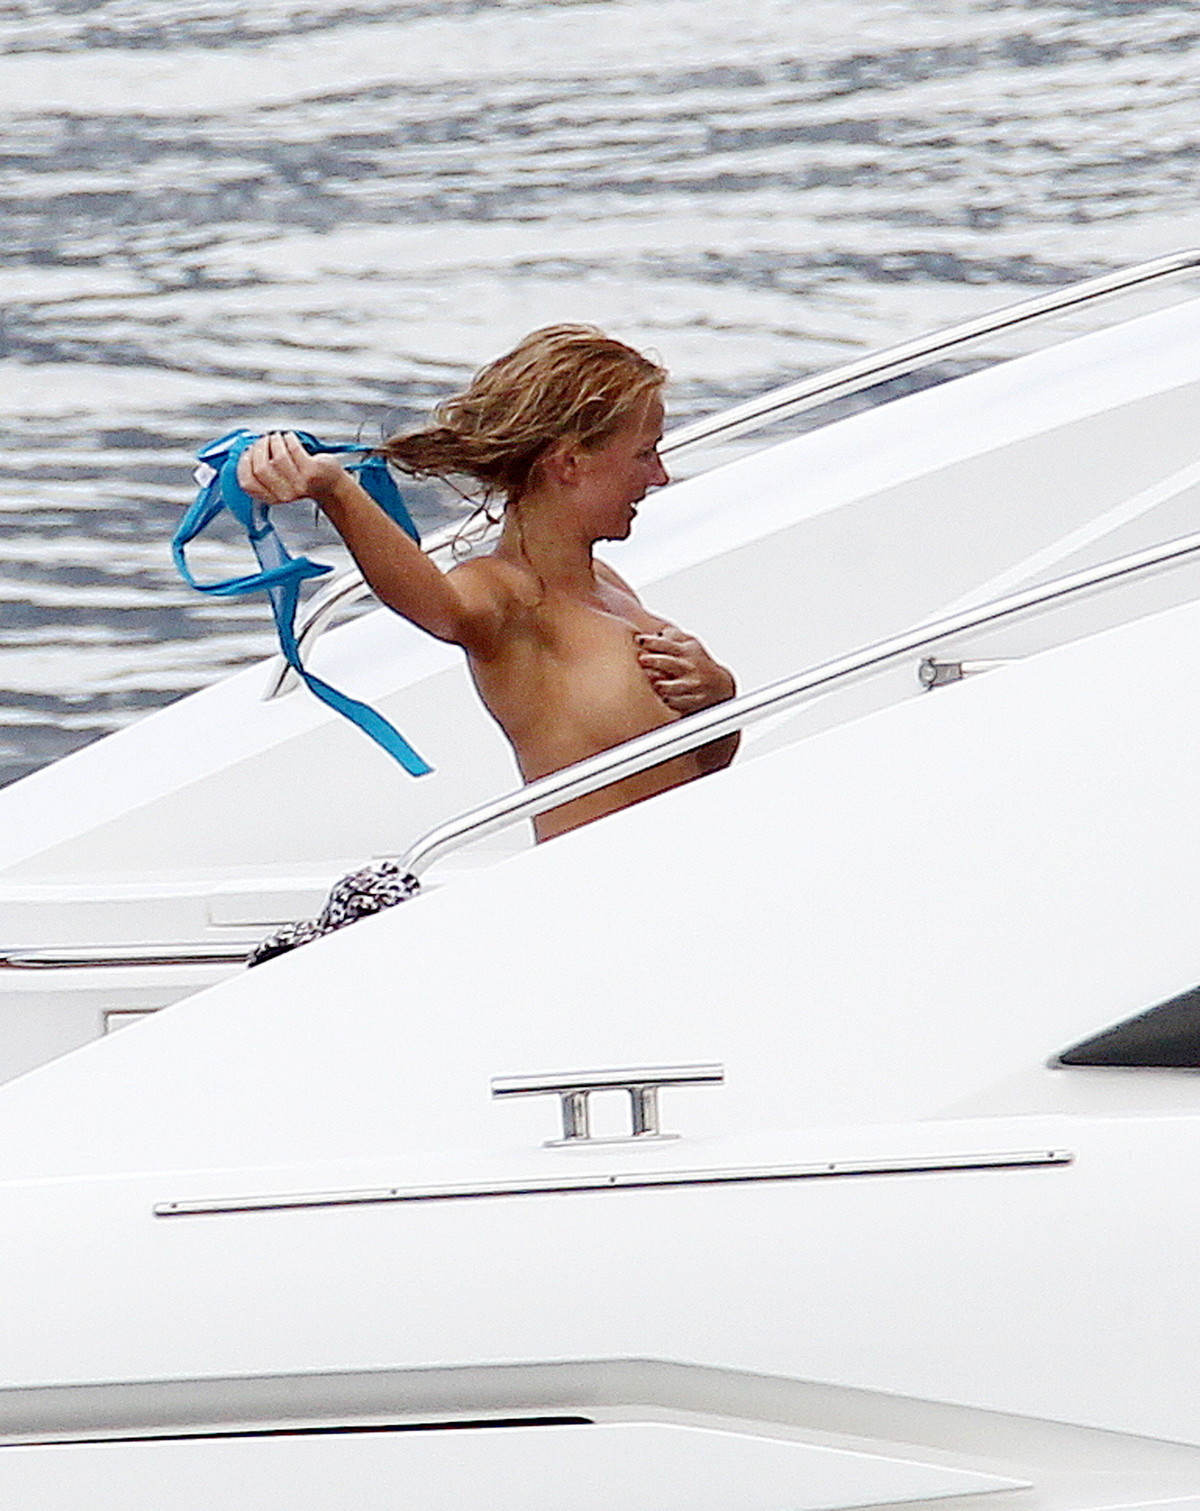 Topless Bikini On Boat